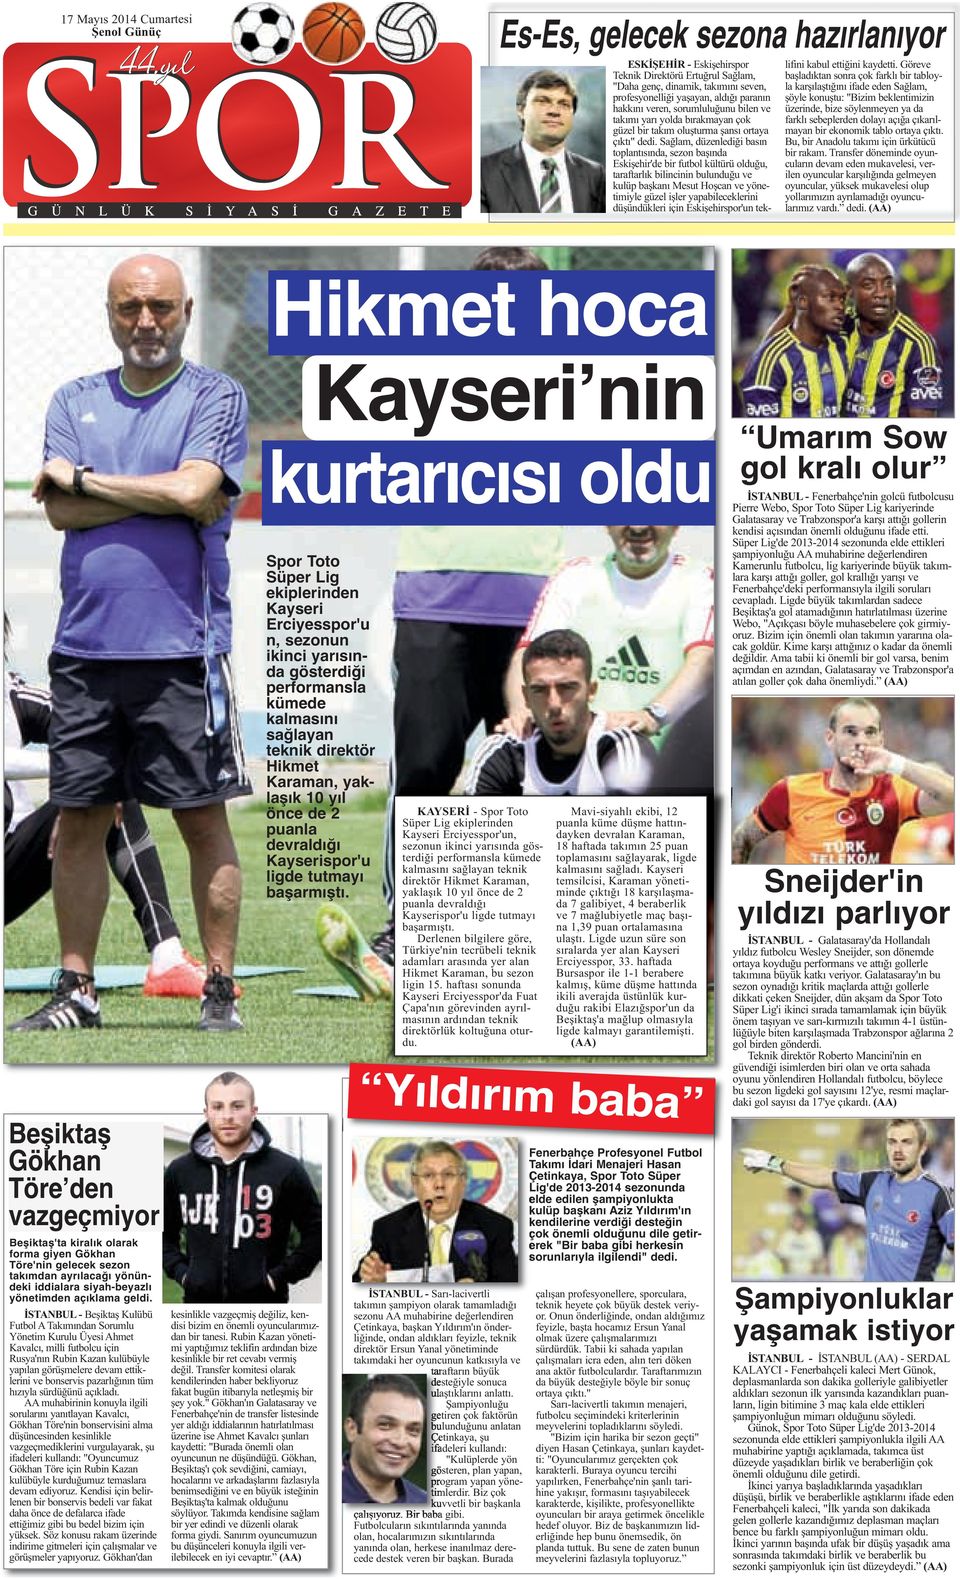 Sağlam, düzenlediği basın toplantısında, sezon başında Eskişehir'de bir futbol kültürü olduğu, taraftarlık bilincinin bulunduğu ve kulüp başkanı Mesut Hoşcan ve yönetimiyle güzel işler